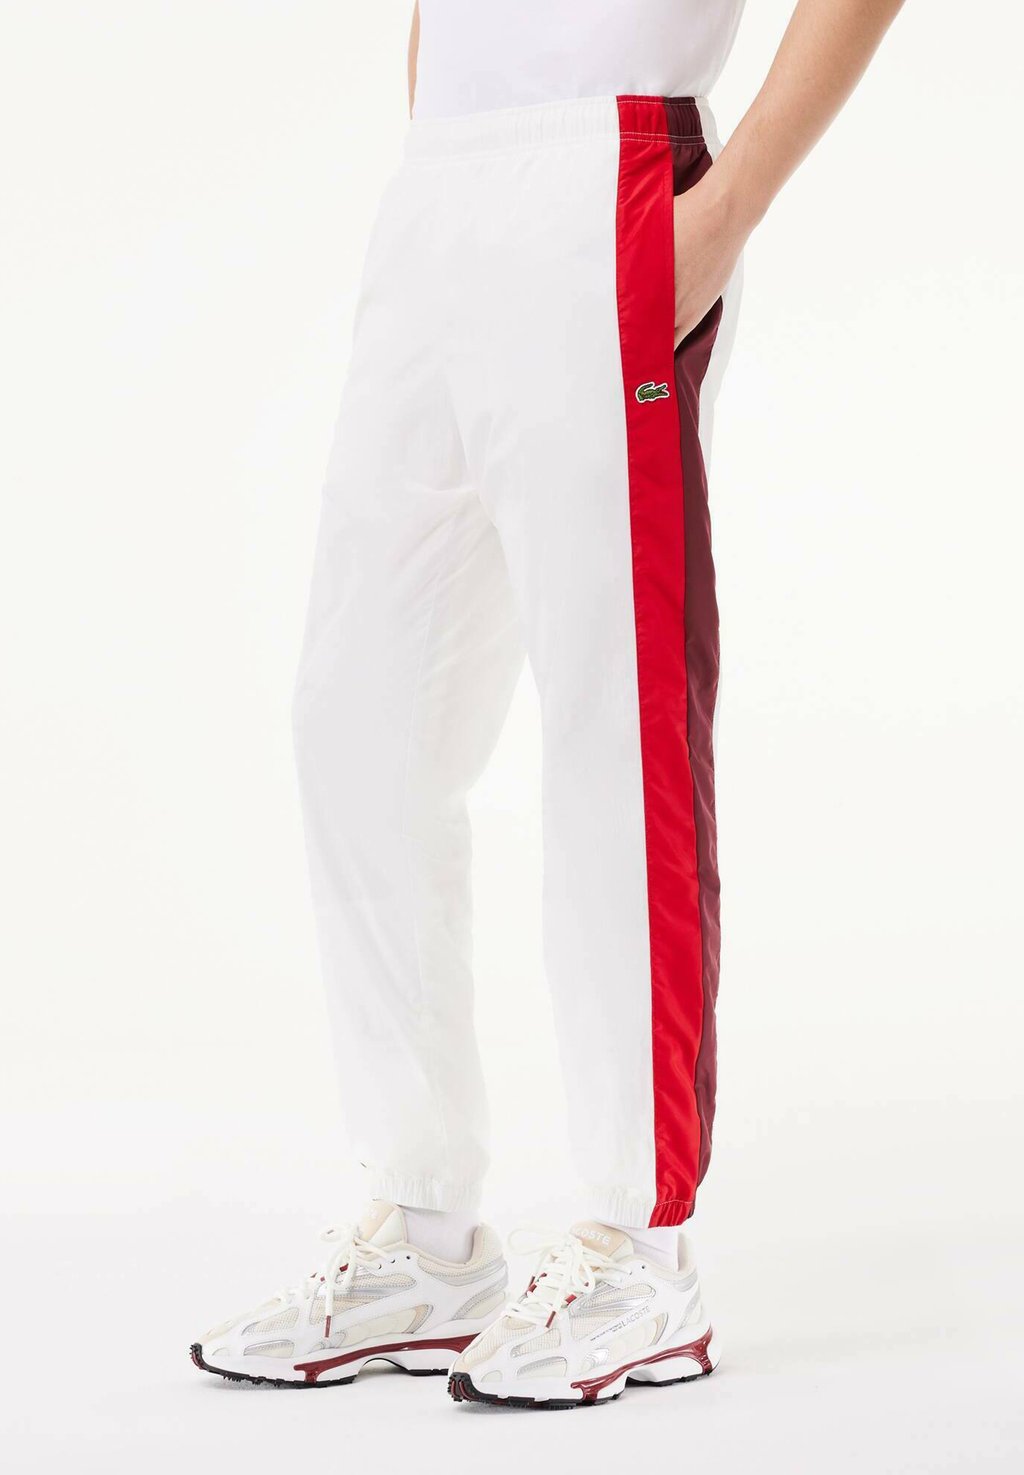 Спортивные штаны Lacoste, цвет blanc bordeaux rouge igy rouge et blanc bouquete